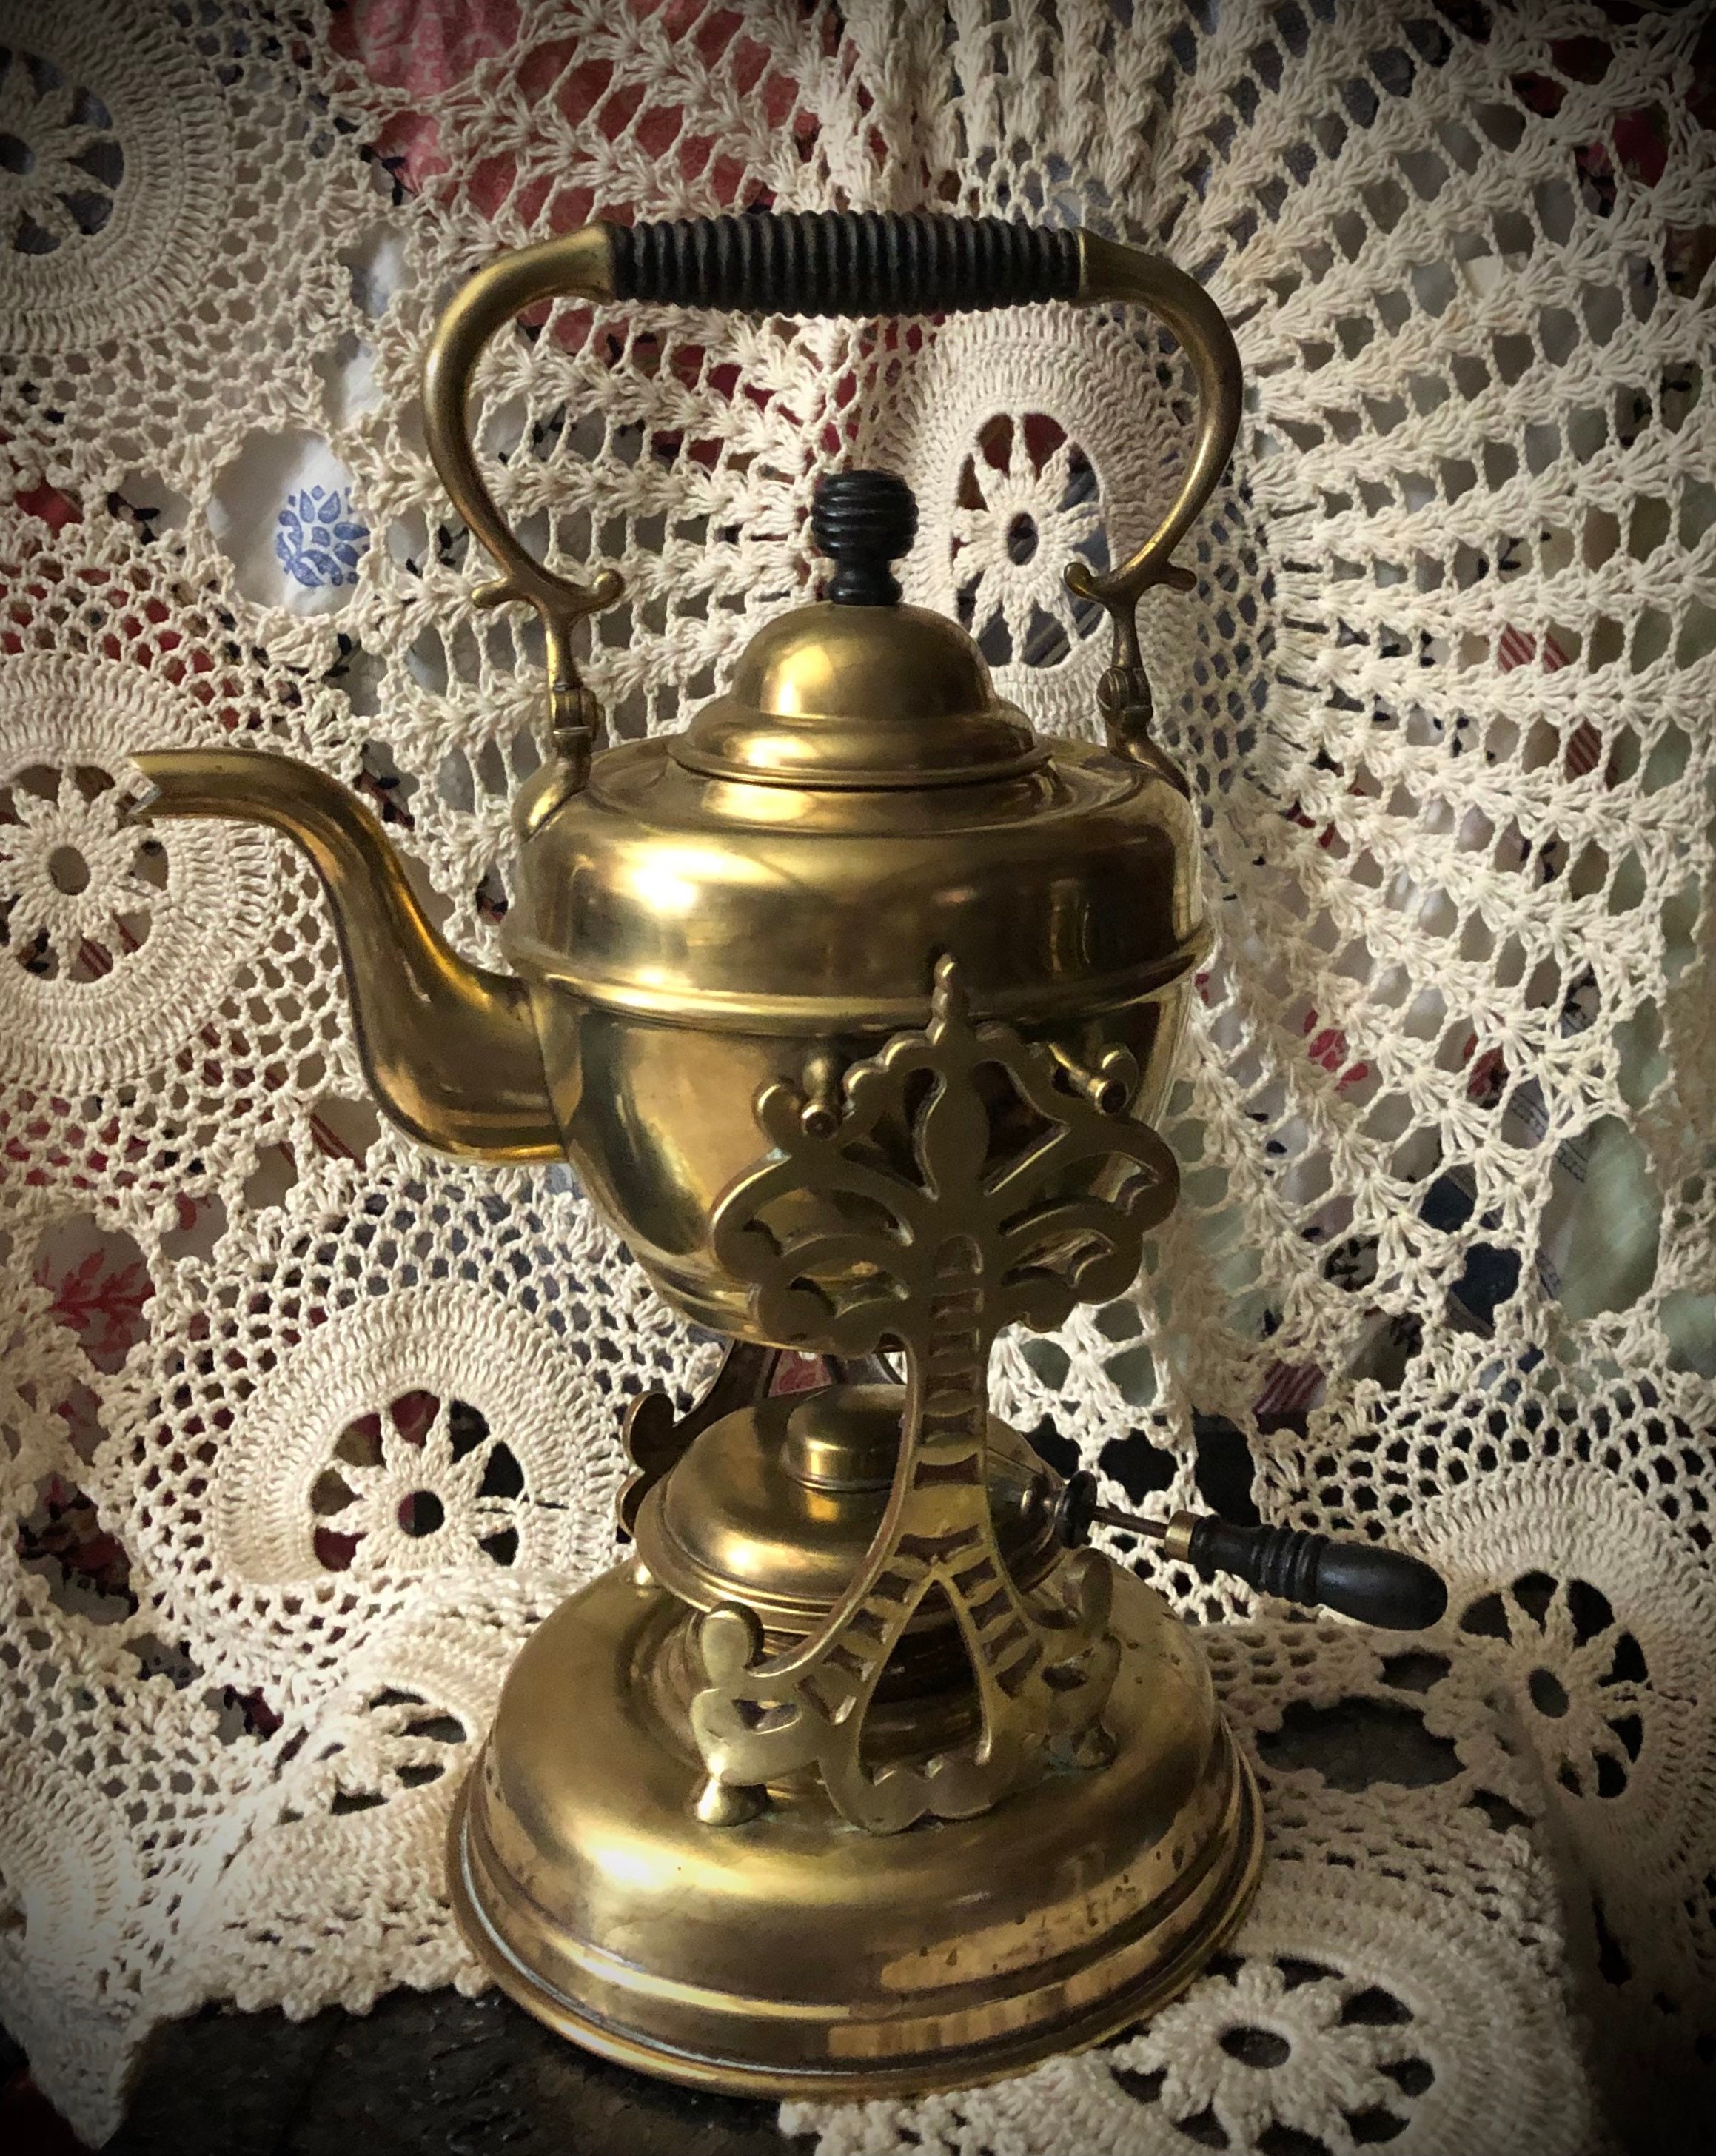 Vintage Brass Teapot Pitcher Antique & Burner Unique Rare Old